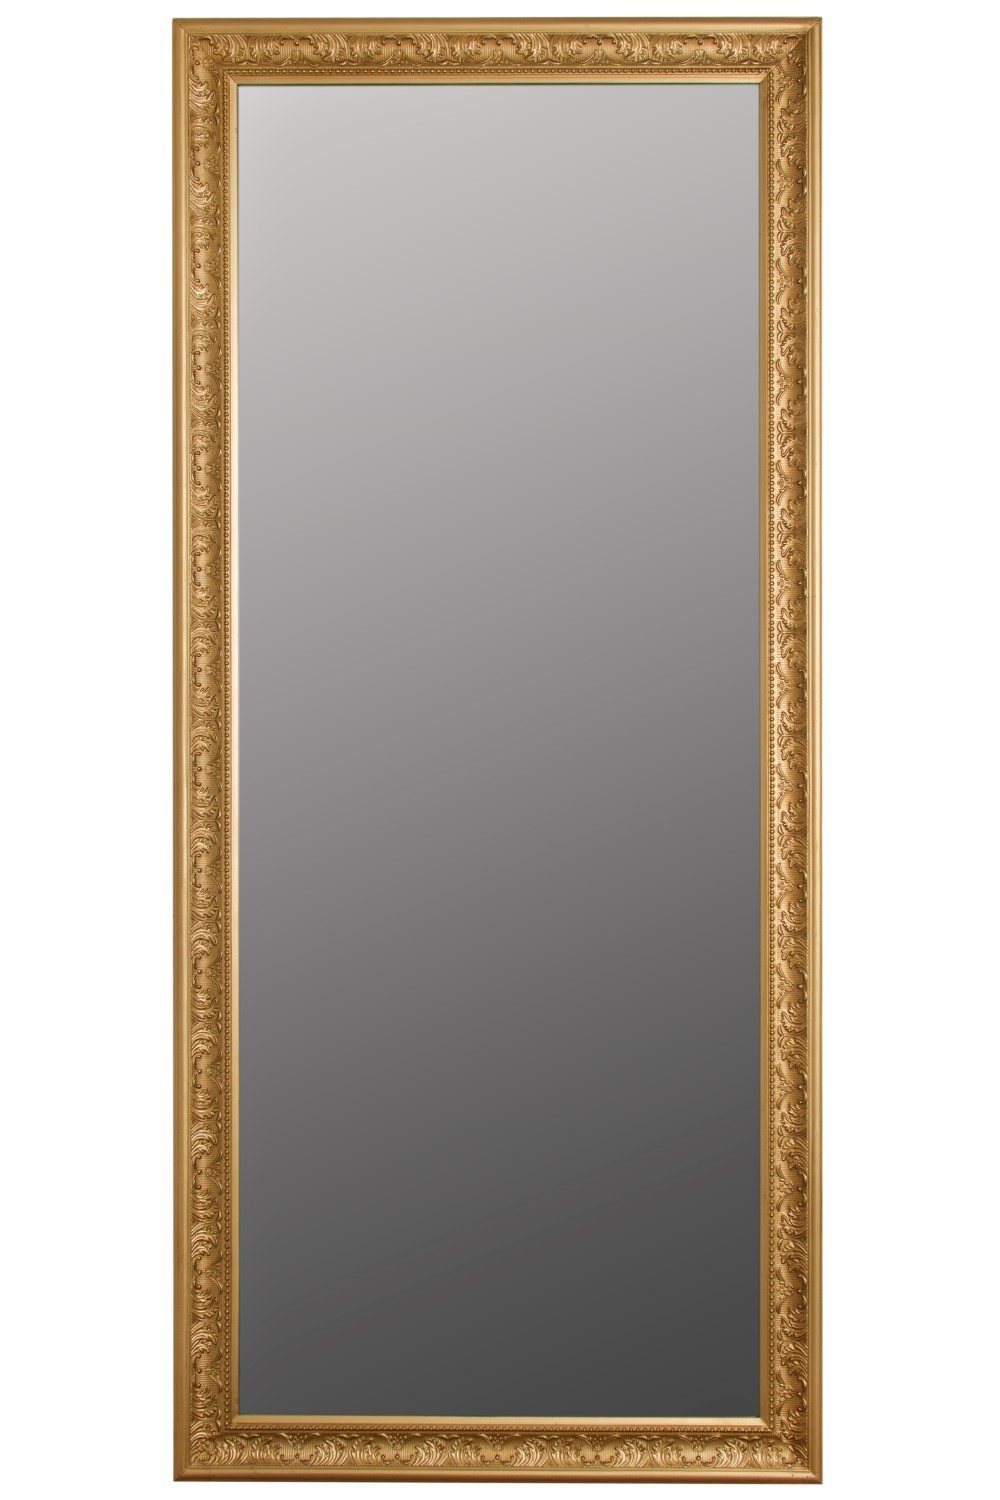 elbmöbel Wandspiegel Wandspiegel Spiegel Antik Stil Barock mit  Facettenschliff - Ankleidespiegel Ganzkörperspiegel, Spiegel: Wandspiegel  162x72x7 cm gold Barock Rahmen